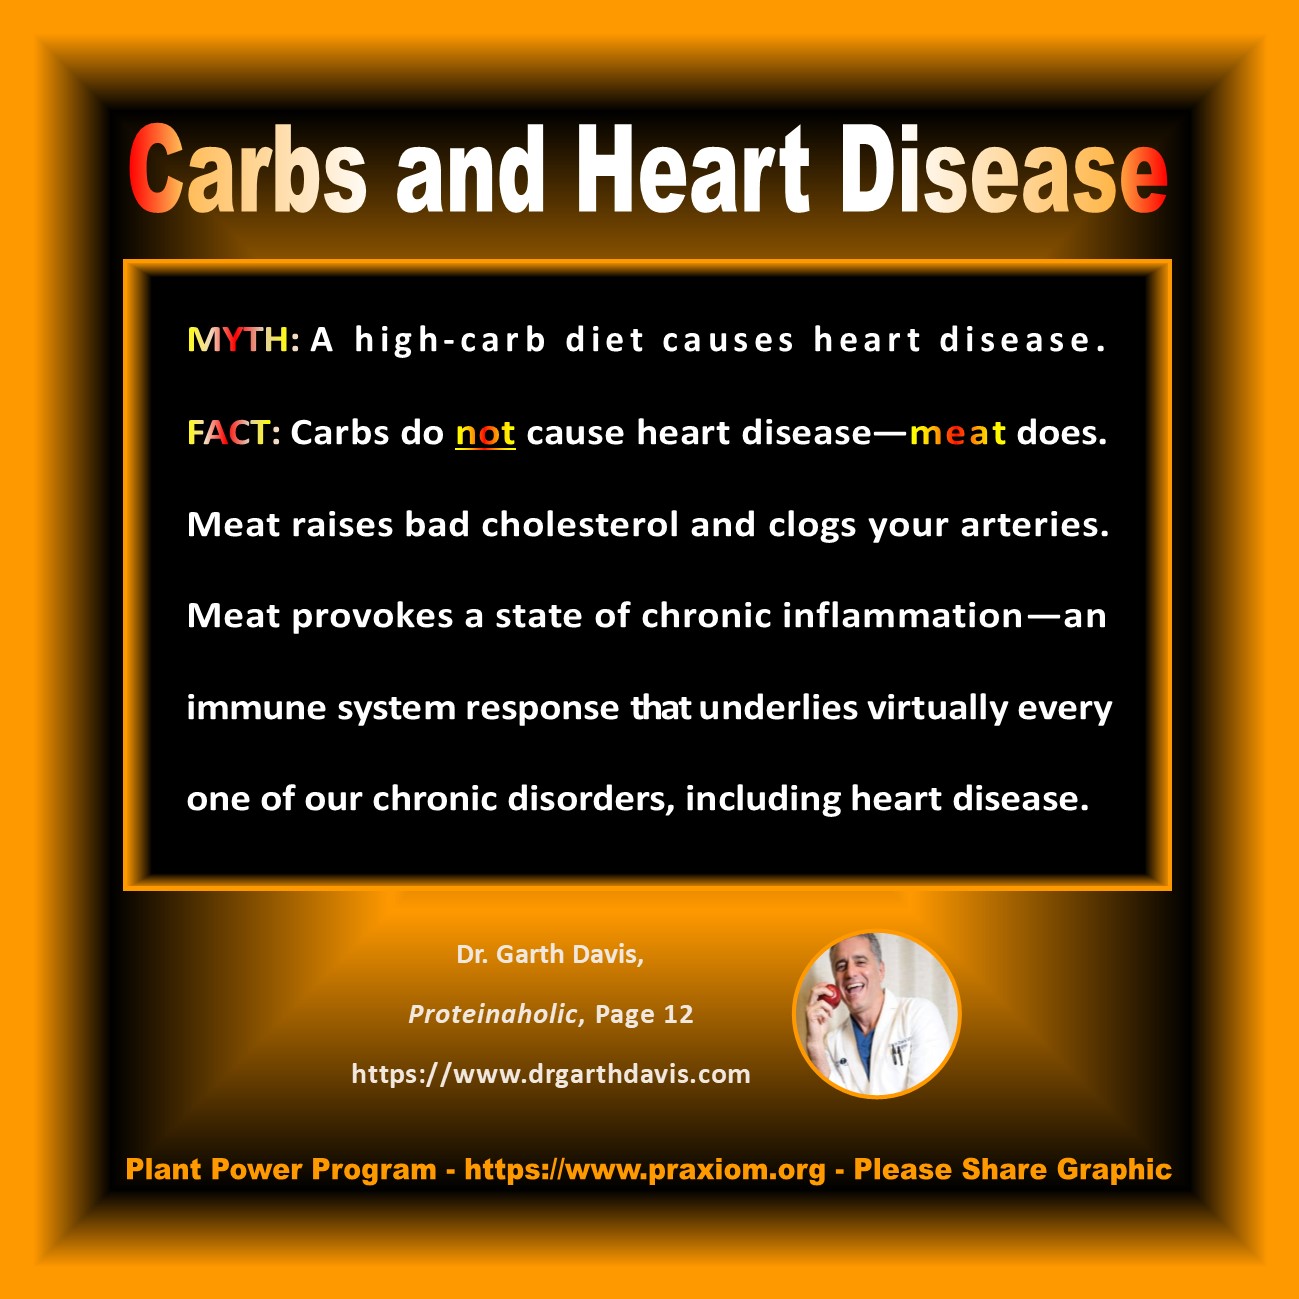 Carbs and Hearth Disease - Dr. Garth Davis